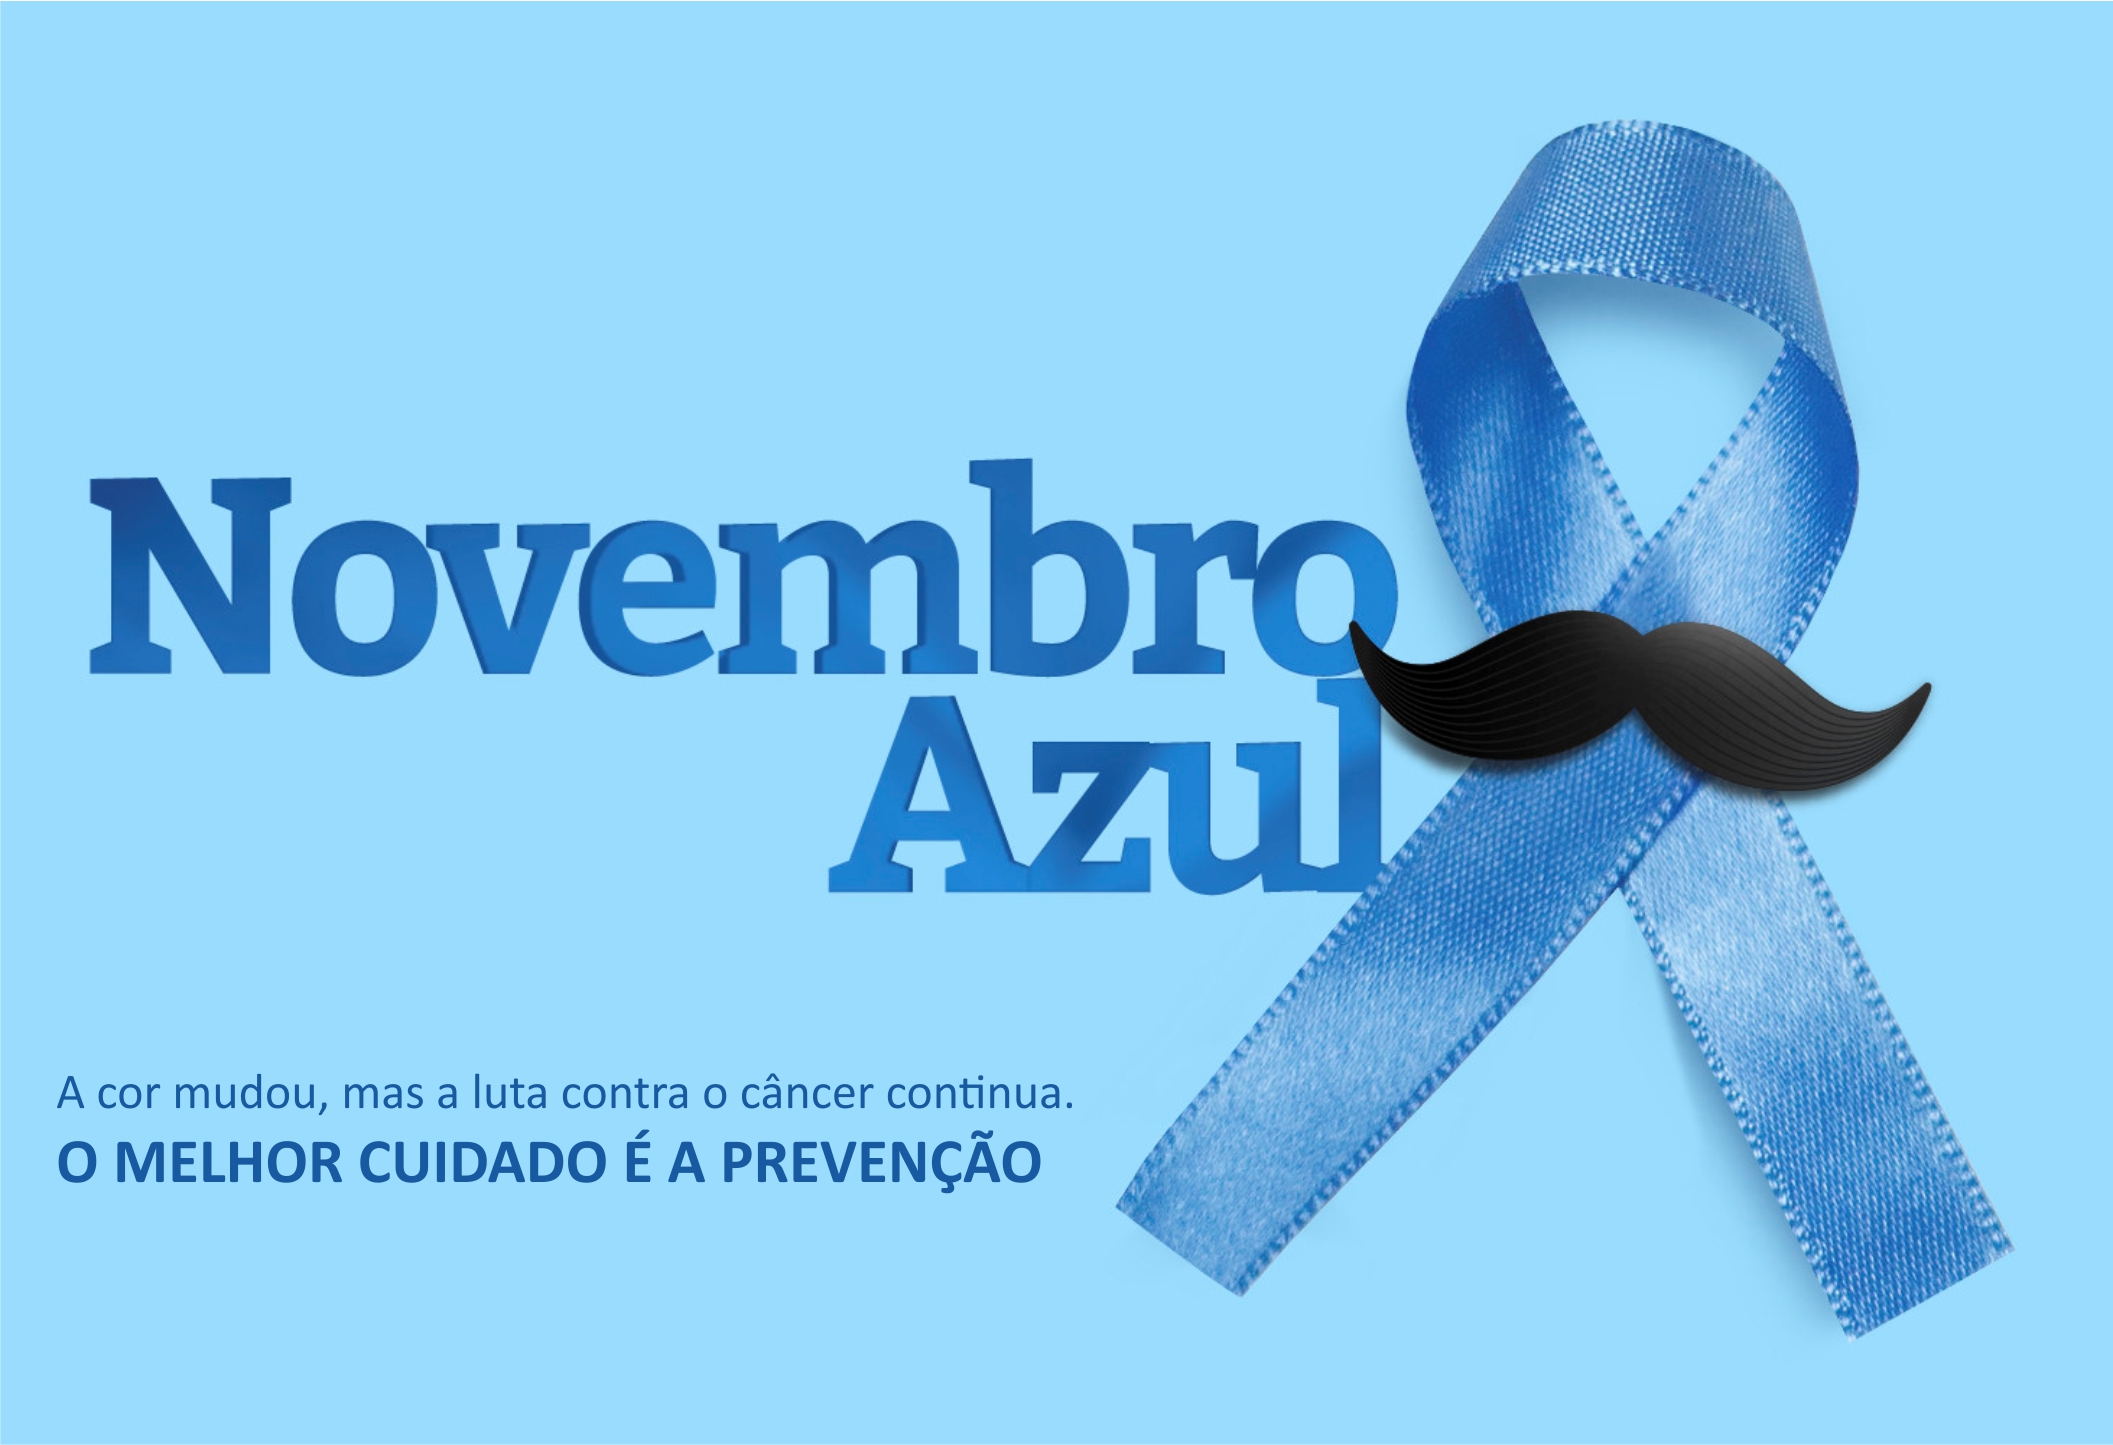 Novembro azul: incentivando os homens a cuidarem da saúde